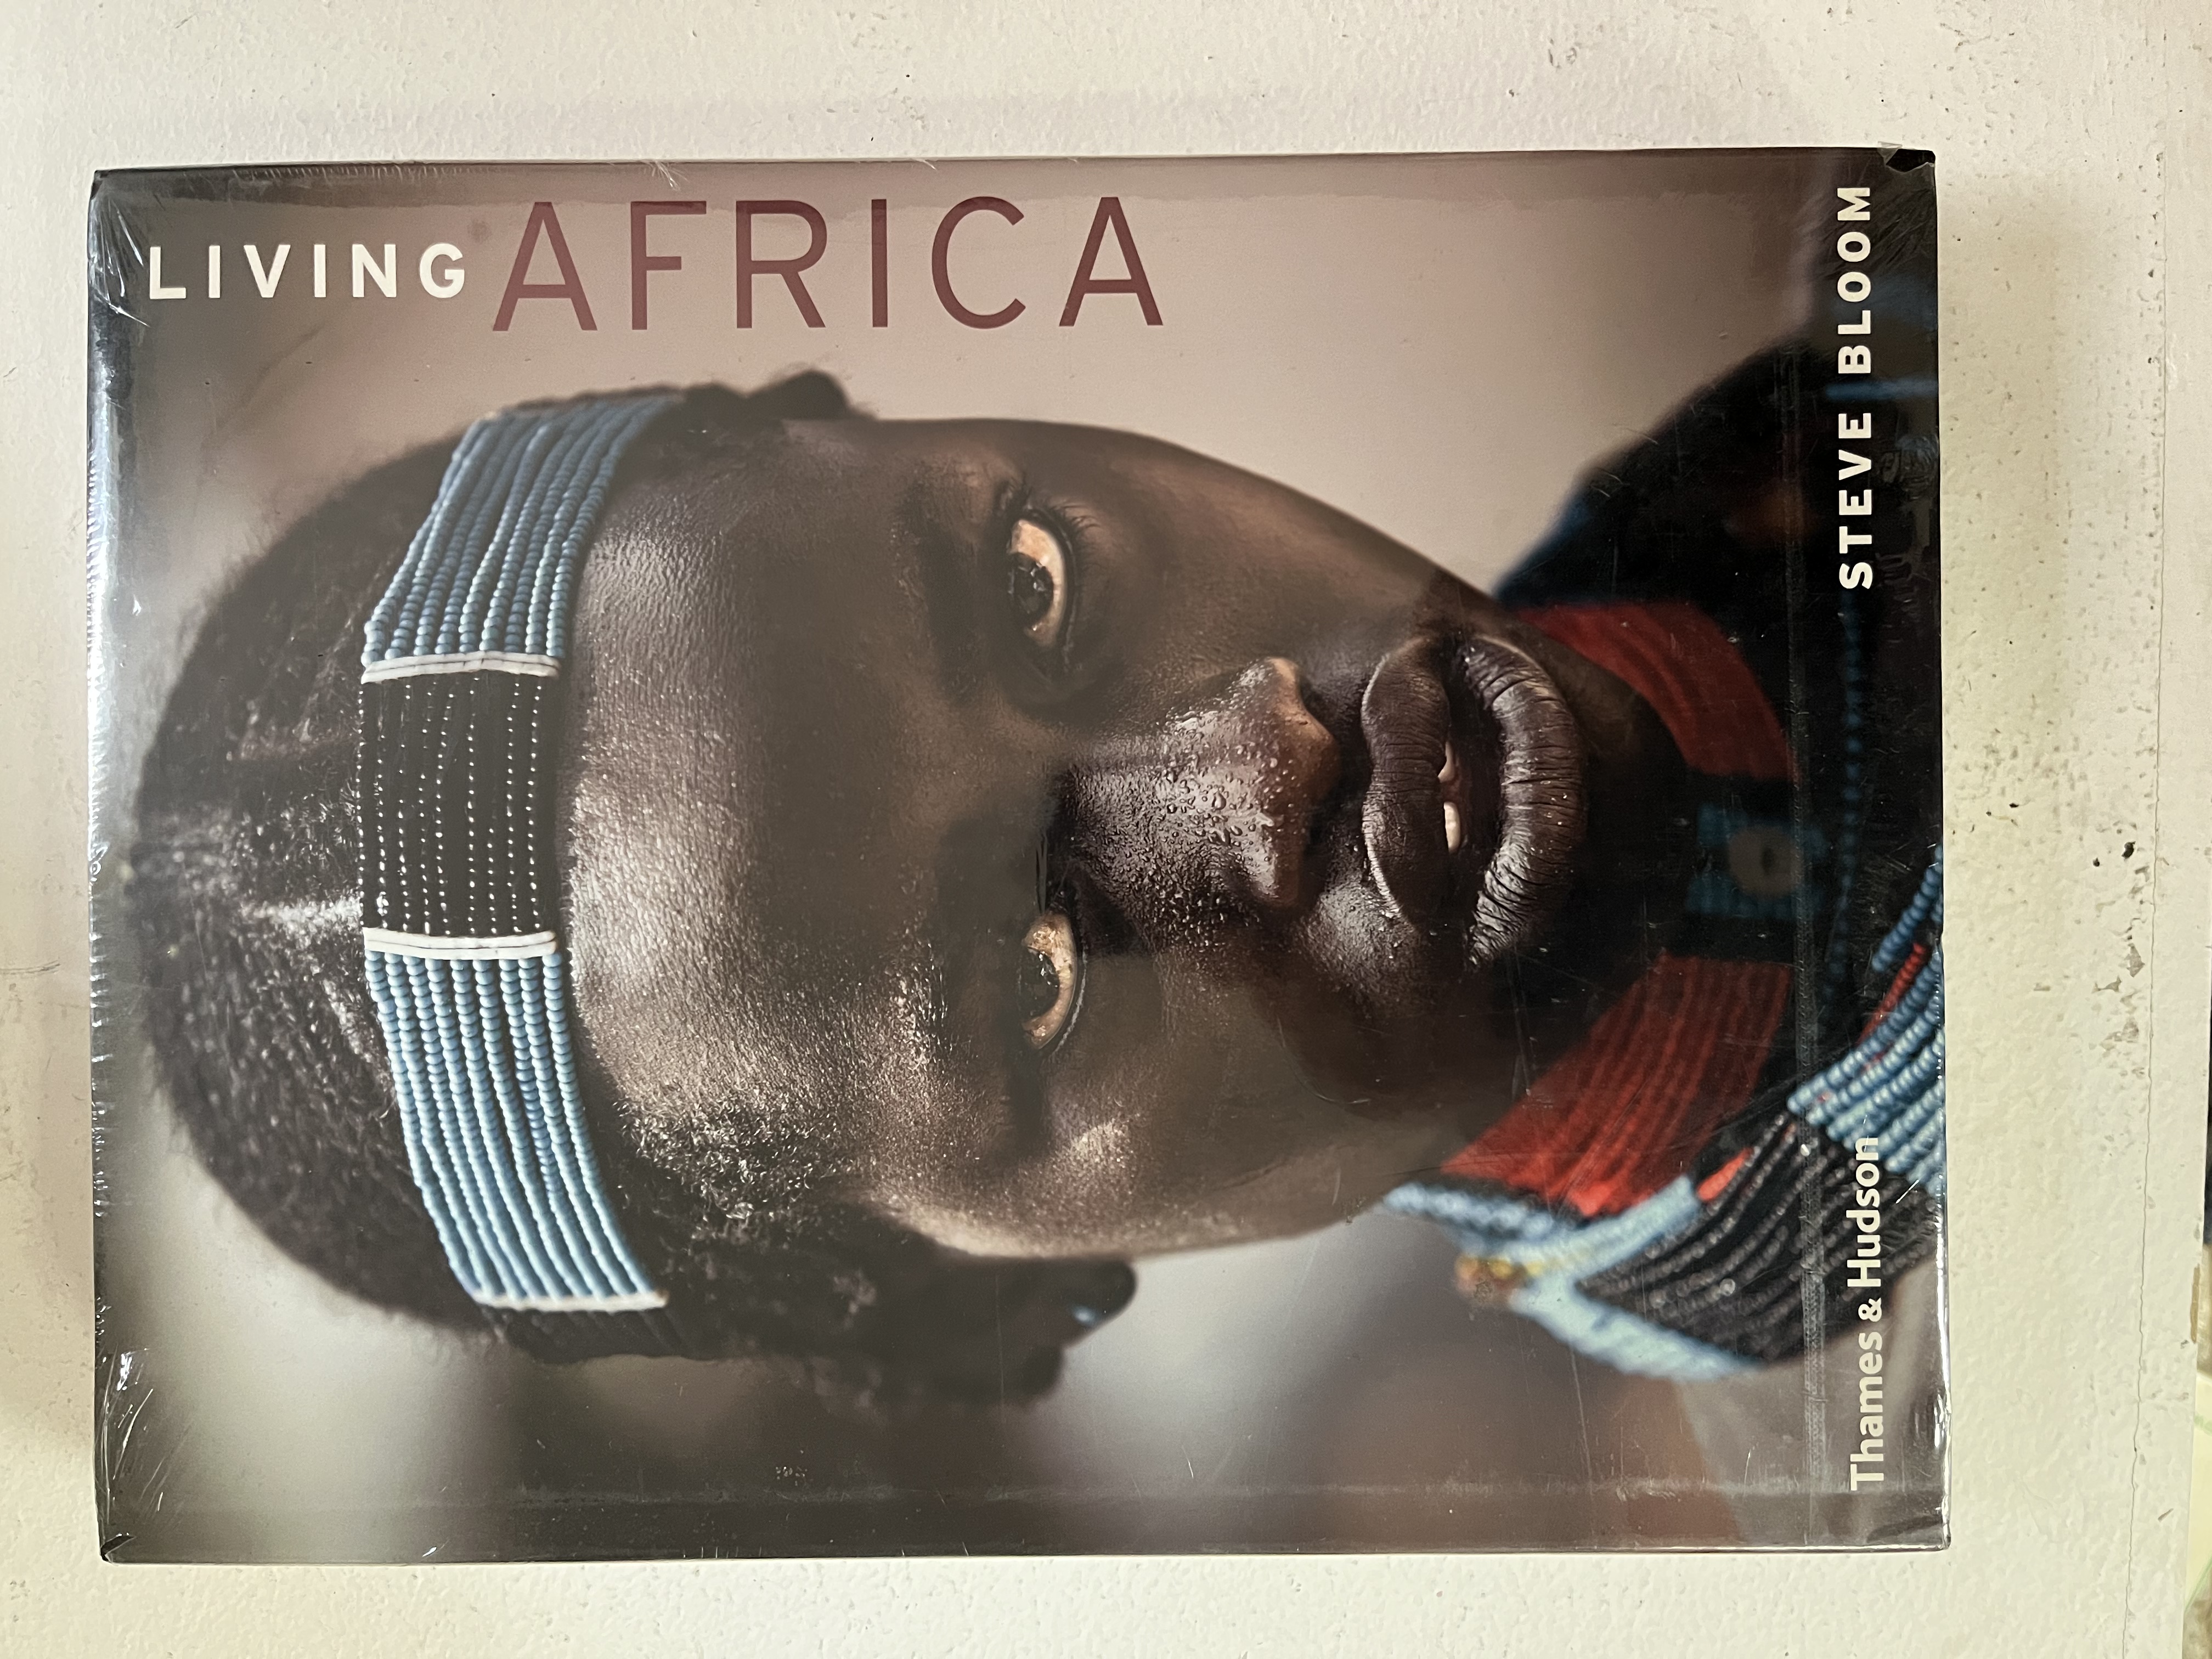 Living Africa - Steve Bloom